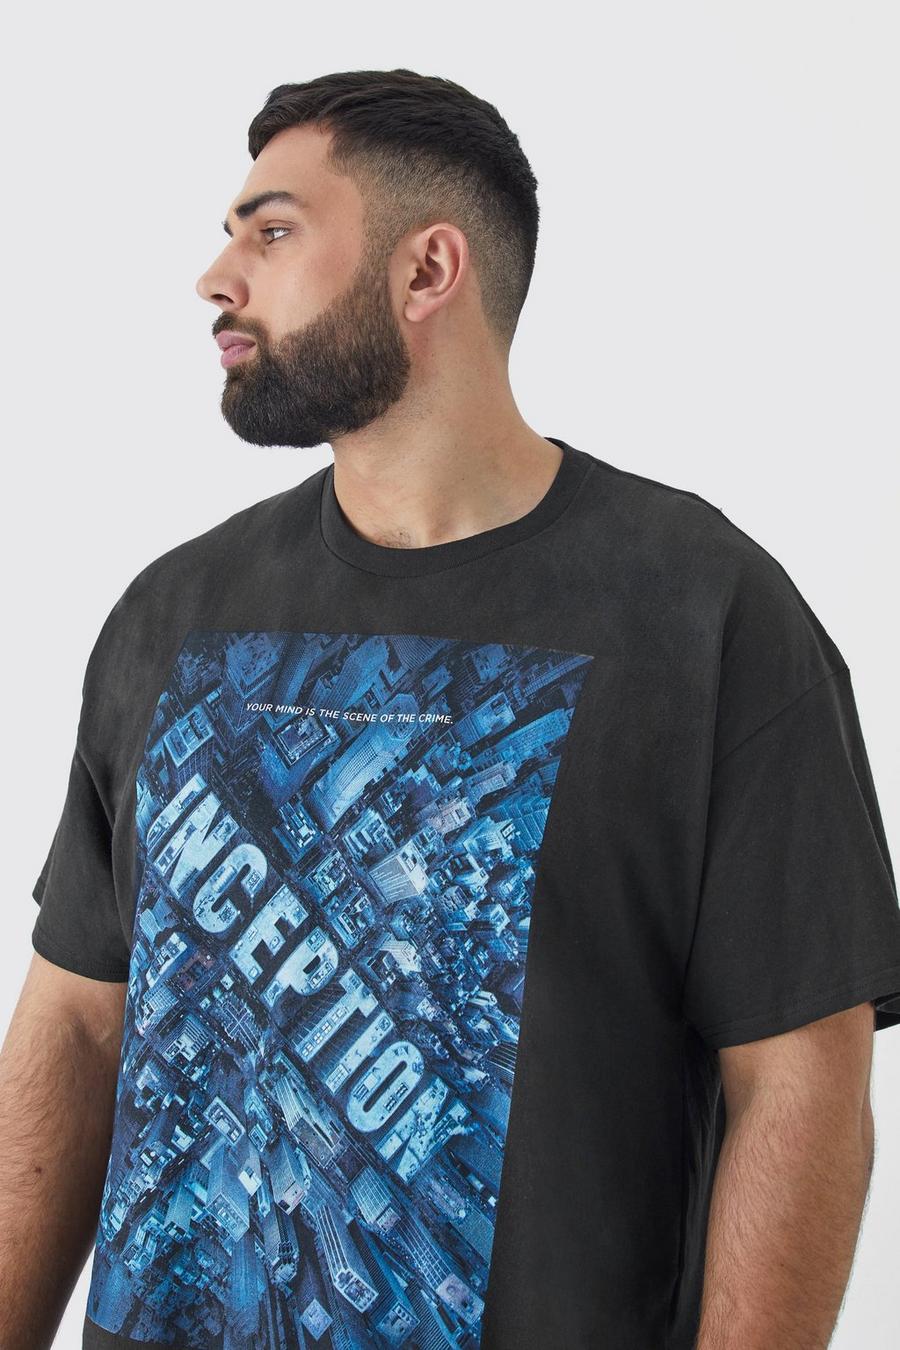 T-shirt Plus Size ufficiale con stampa Inception sul petto, Black nero